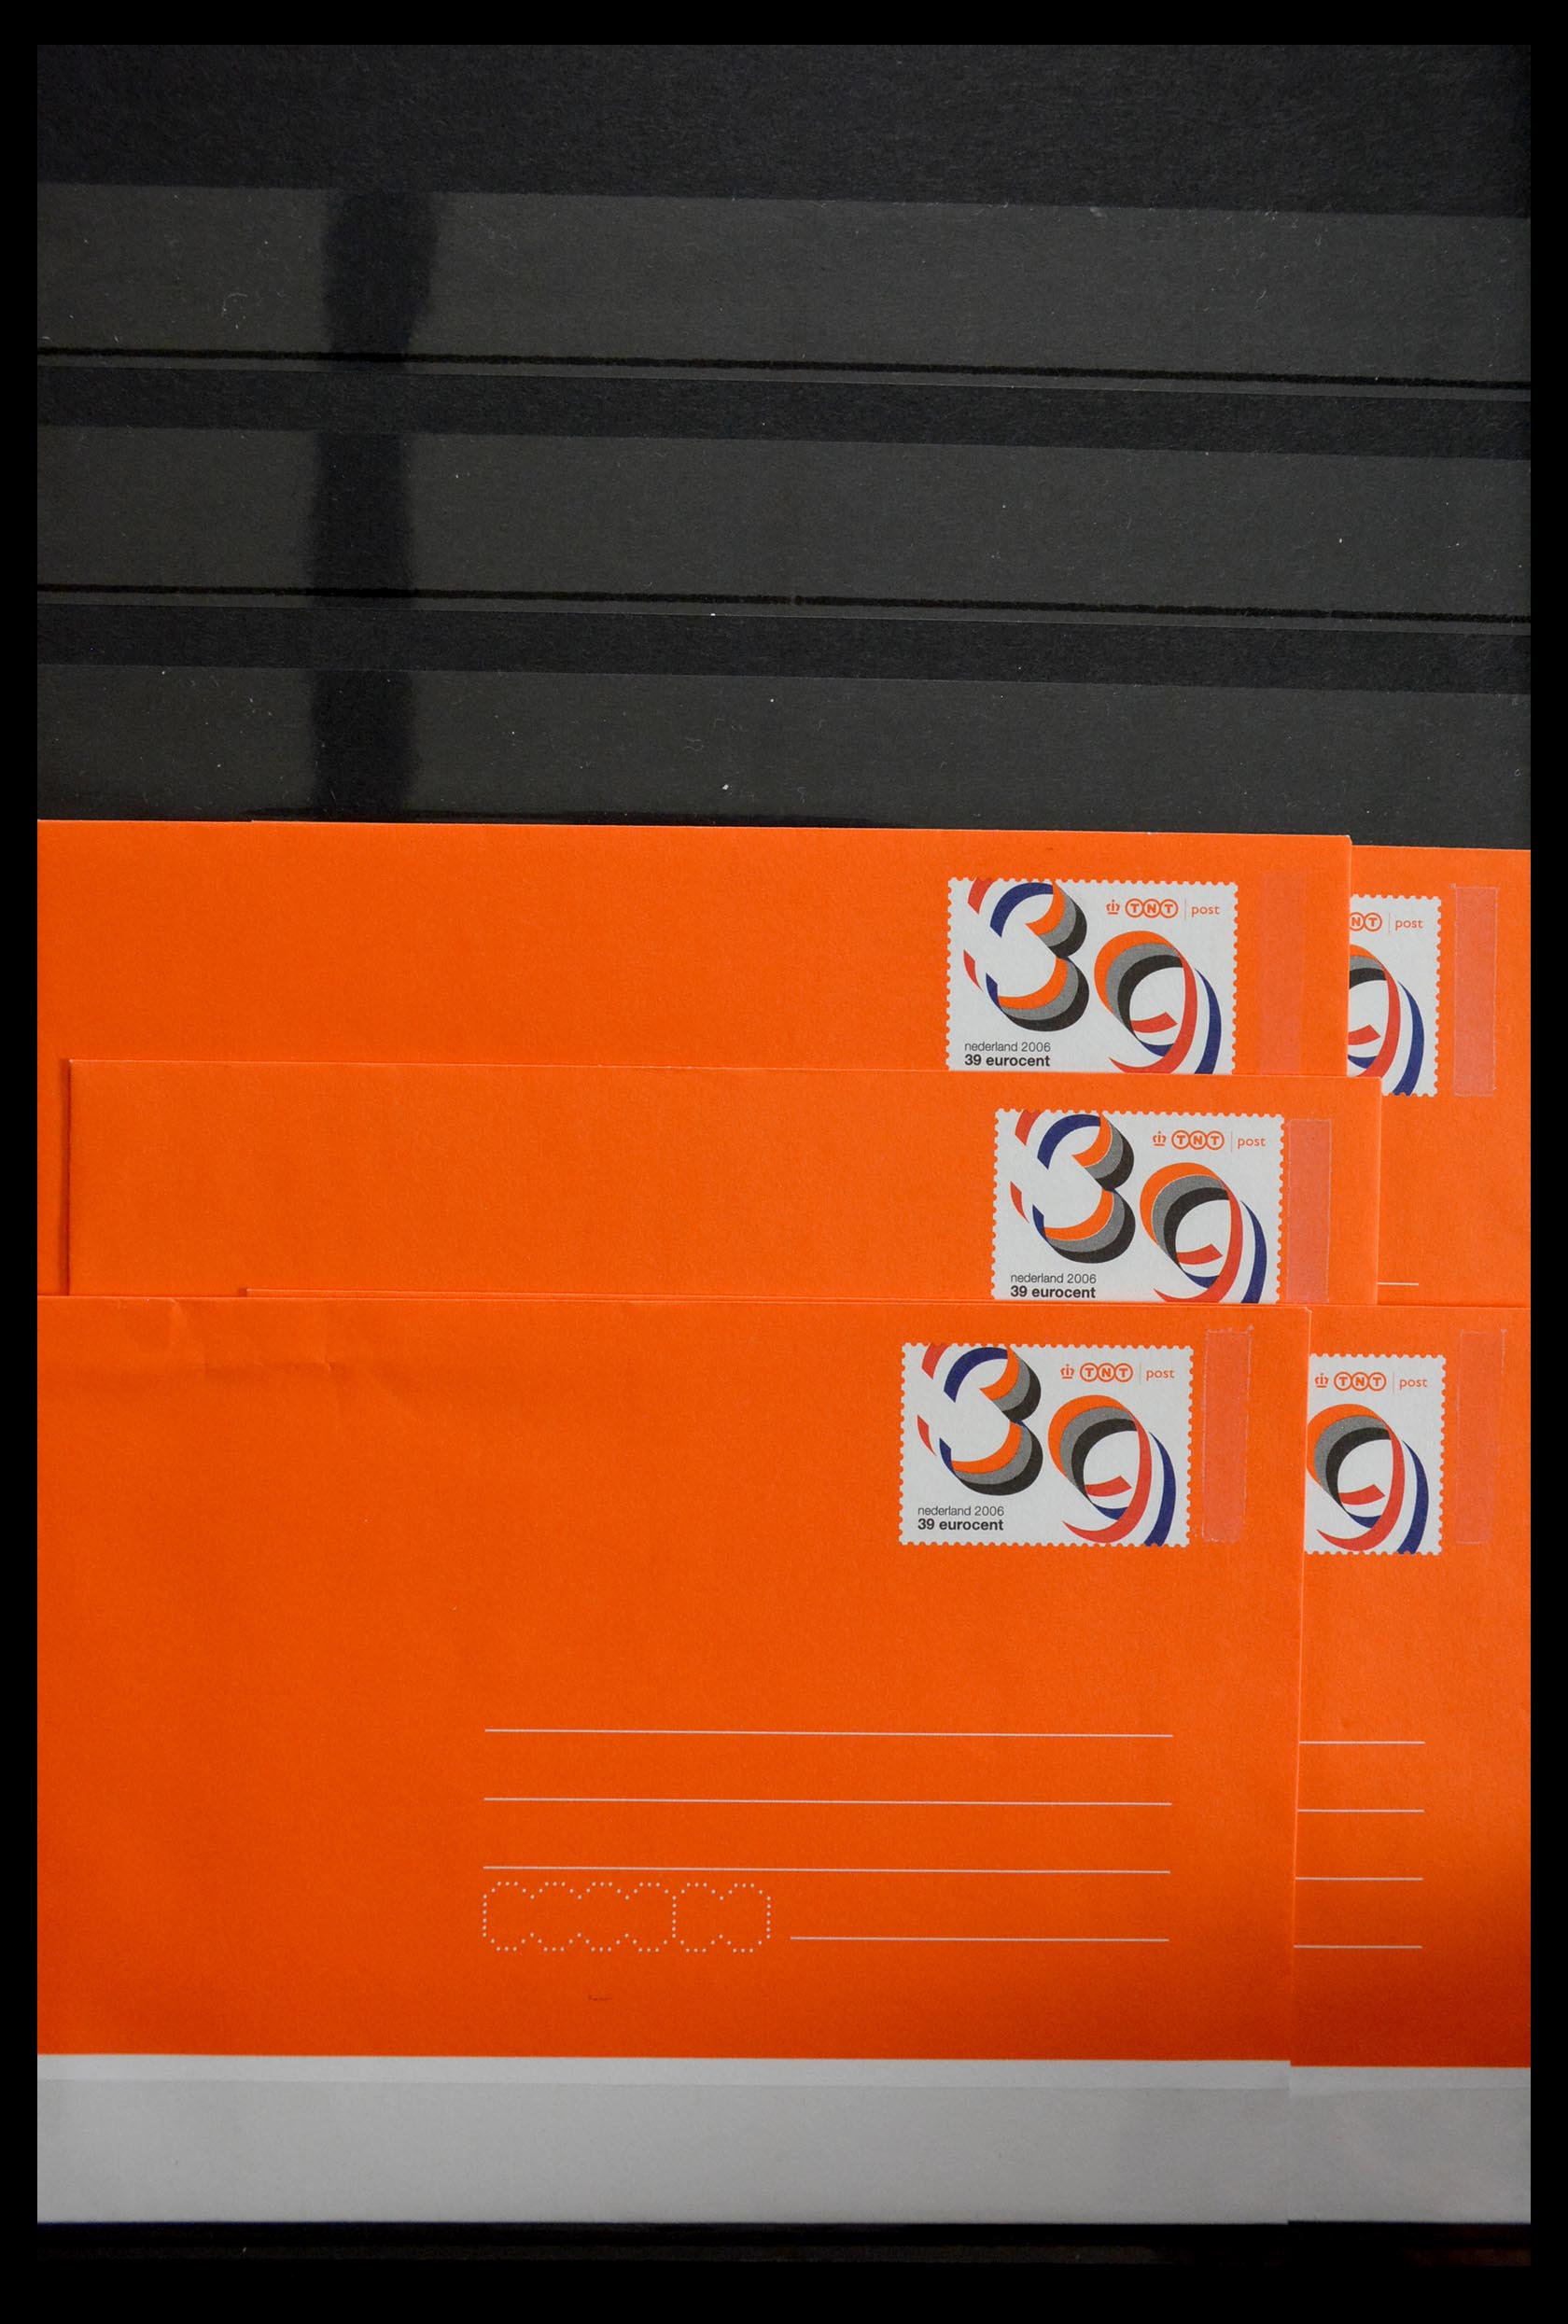 29387 060 - 29387 Netherlands stamp booklets 1964-2014.